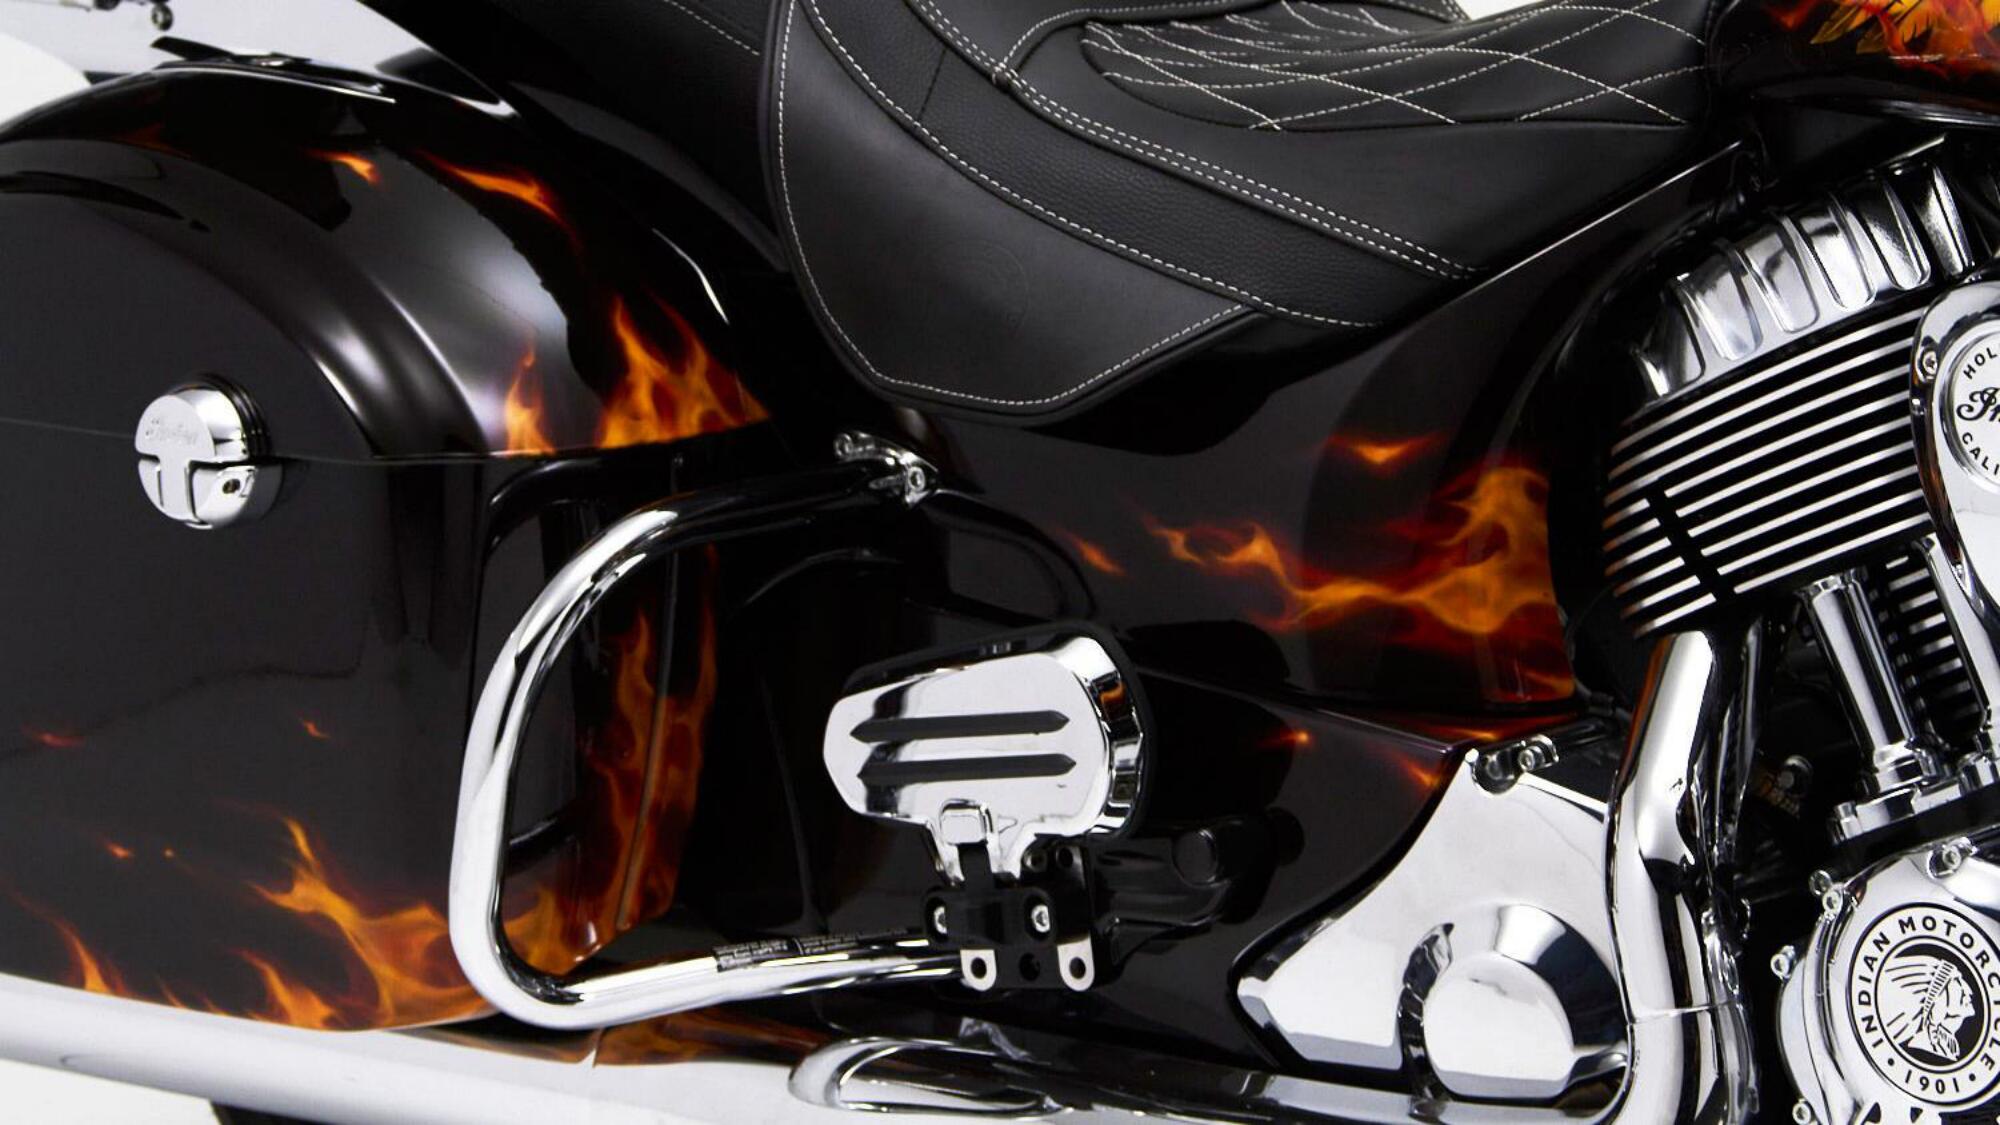 Black Flamed Bike